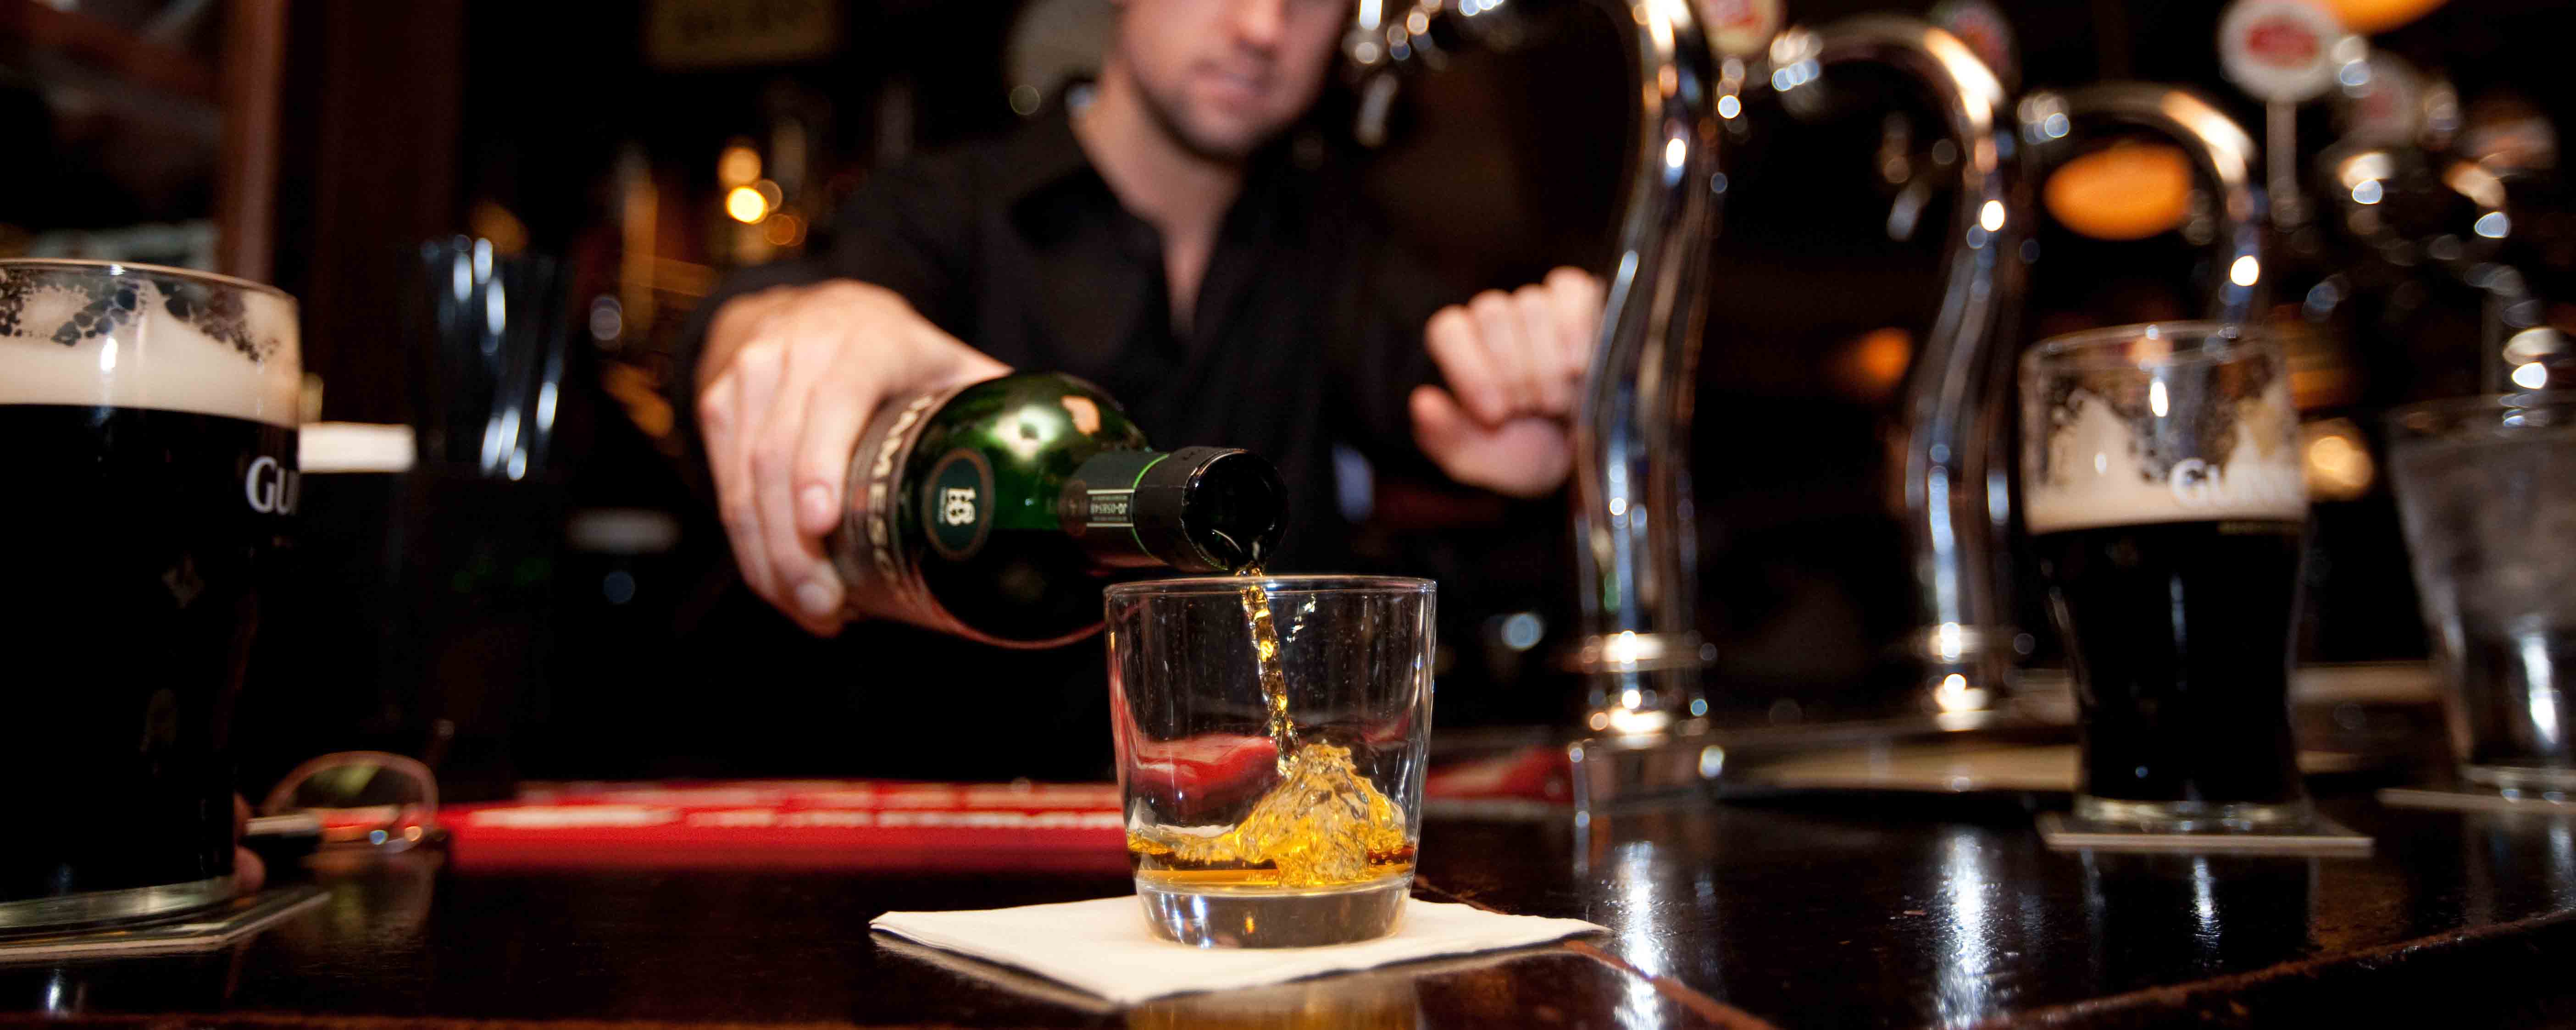 Биологи из США обнаружили «выключатель» удовольствия от алкоголя